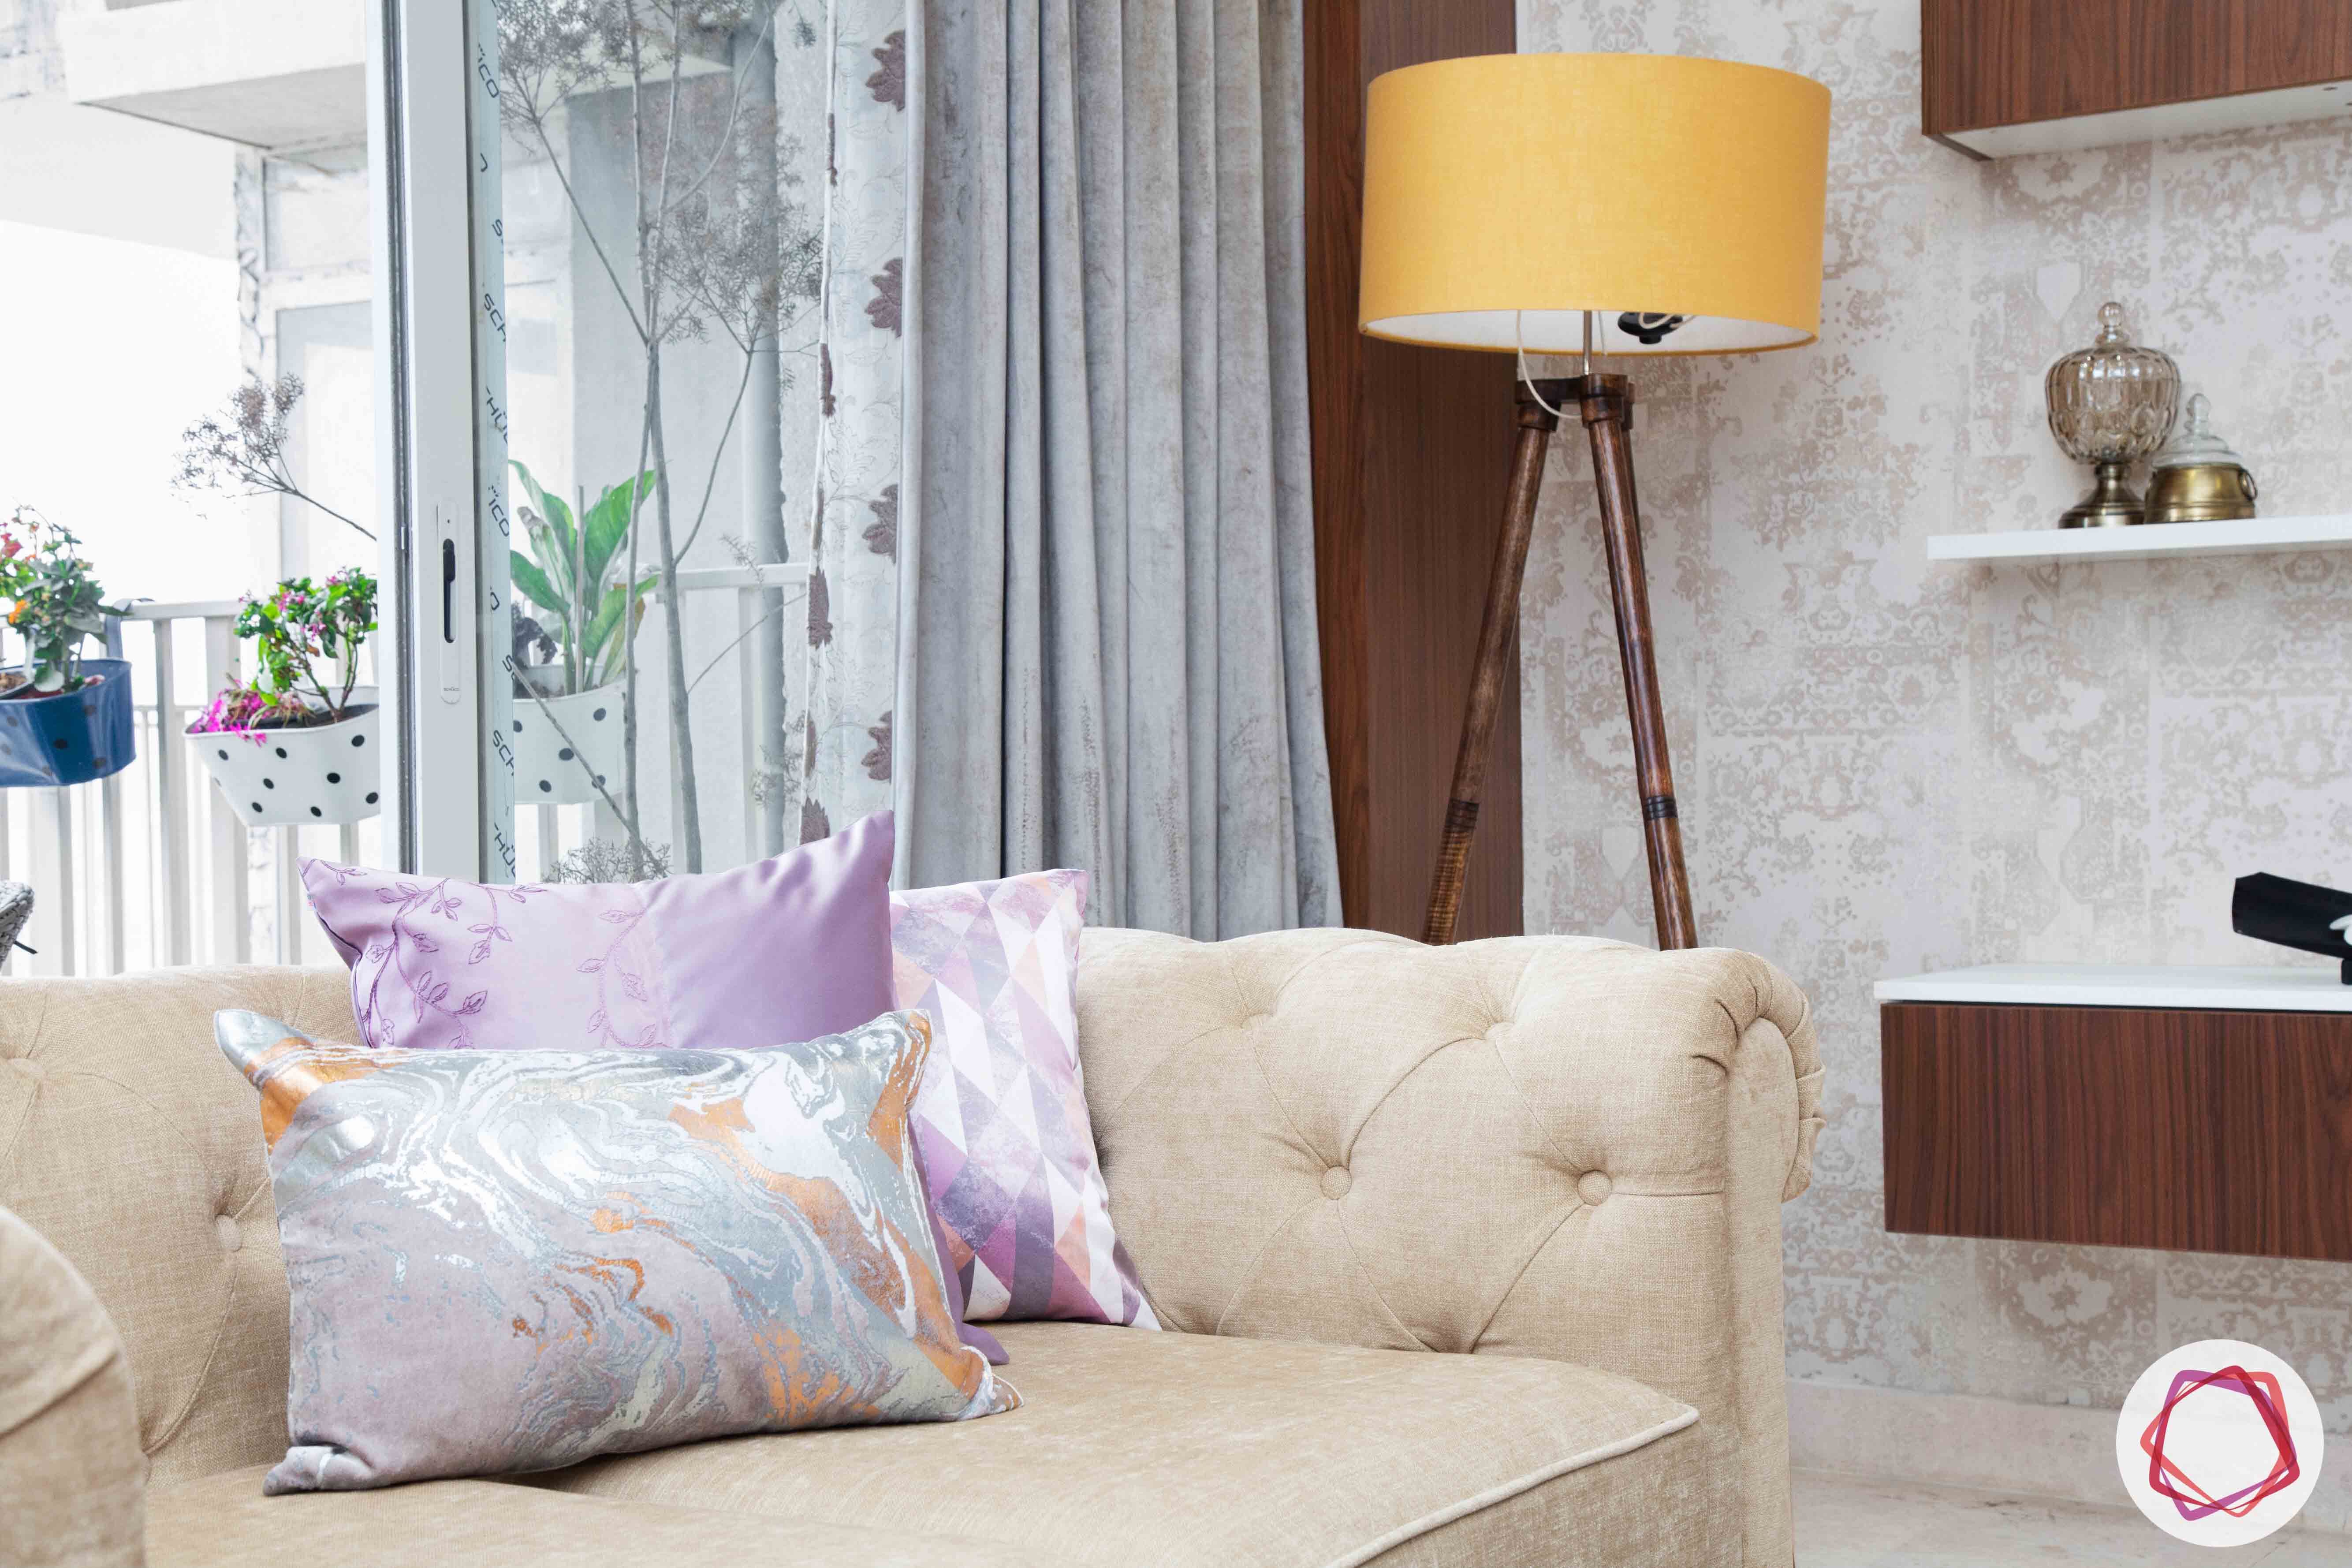 ireo victory valley-living room-beige sofa-yellow floor lamp